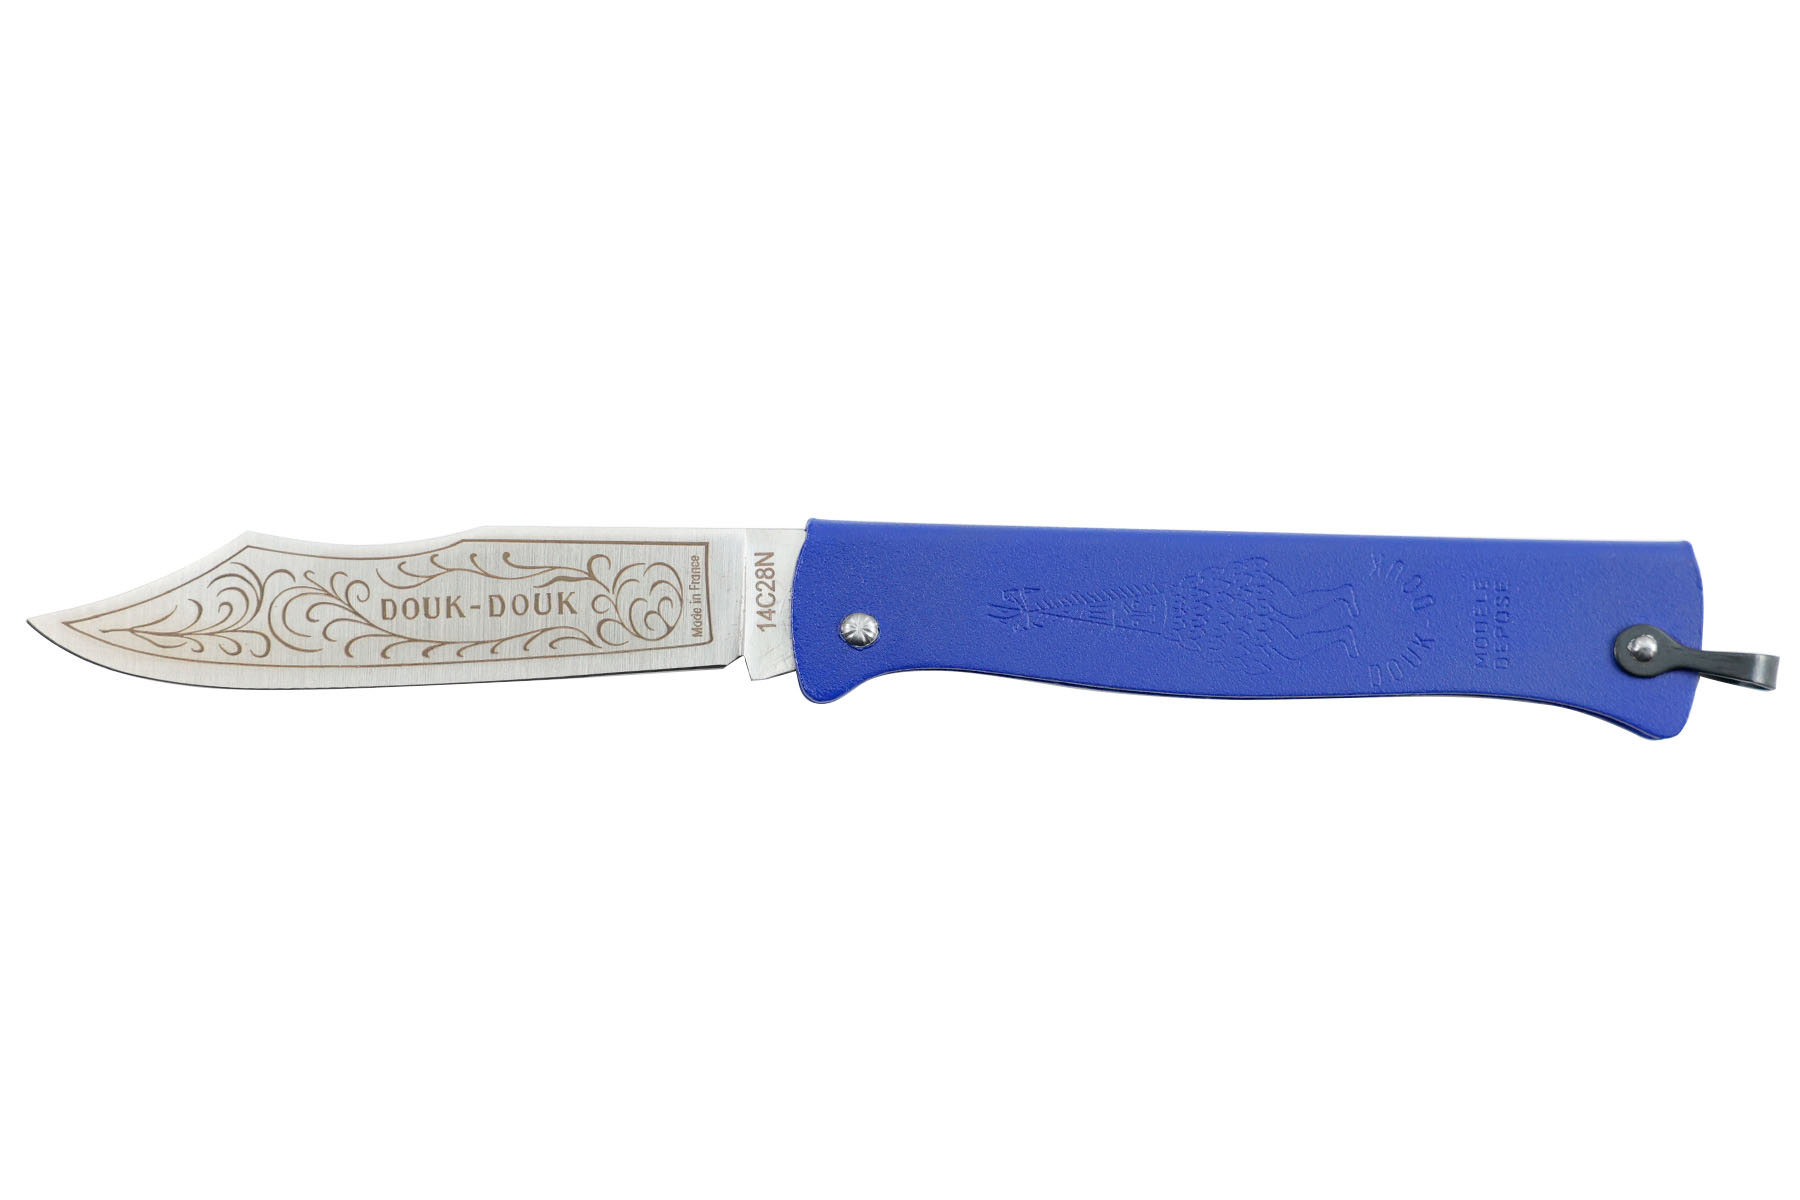 Couteau pliant Douk-Douk par Cognet couleur bleu- Nouvelle version